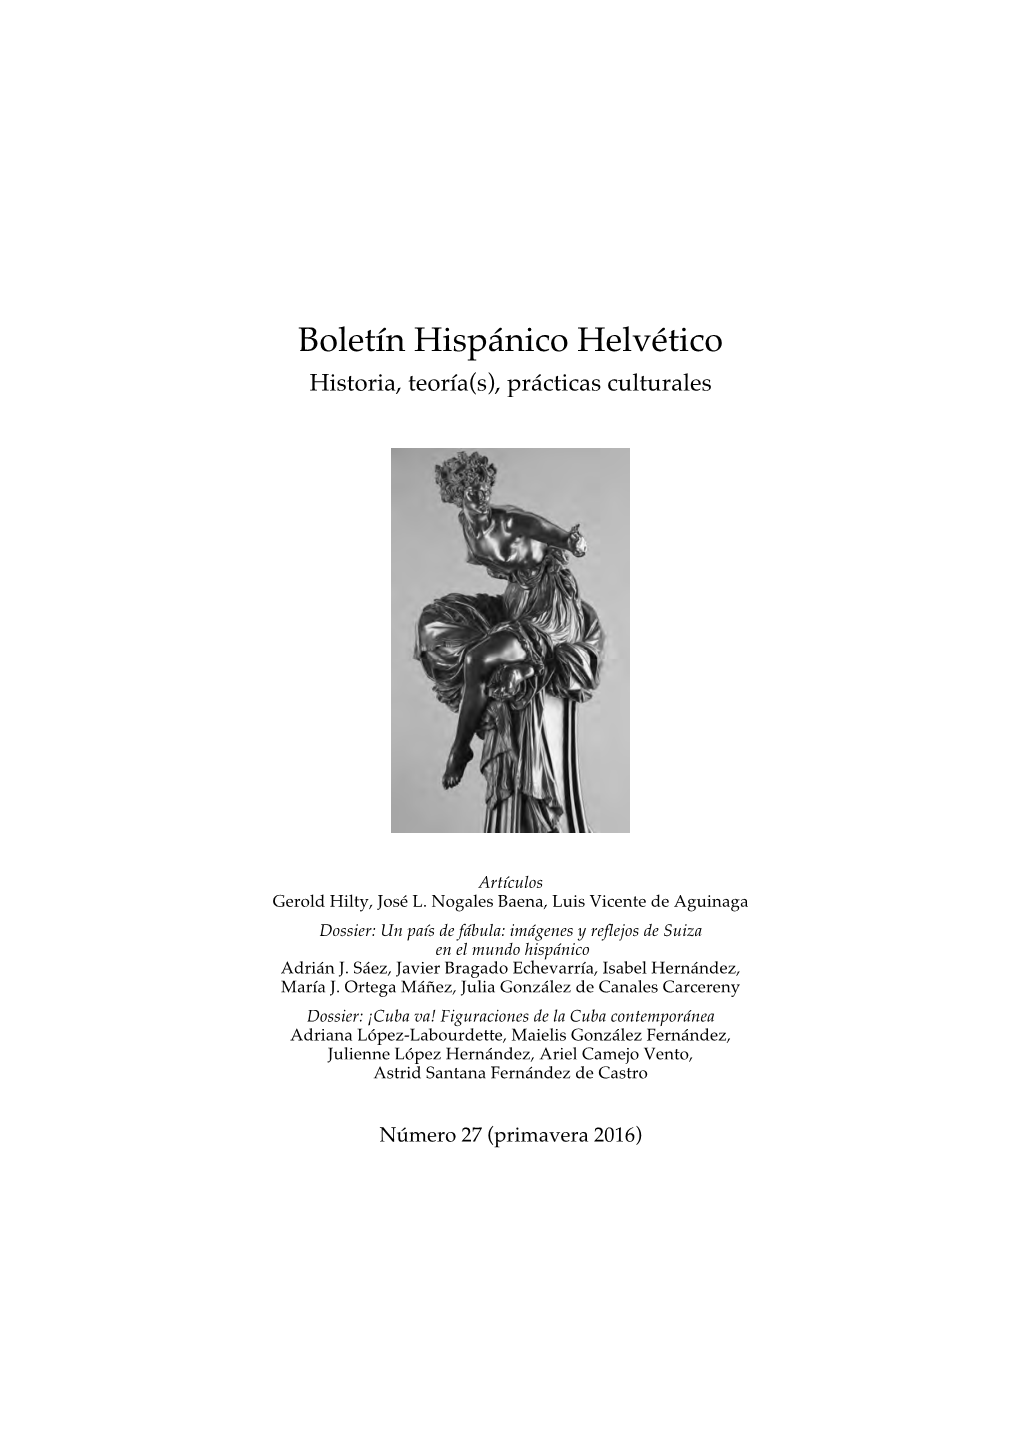 Número 27 (Primavera 2016) BOLETÍN HISPÁNICO HELVÉTICO Historia, Teoría(S), Prácticas Culturales